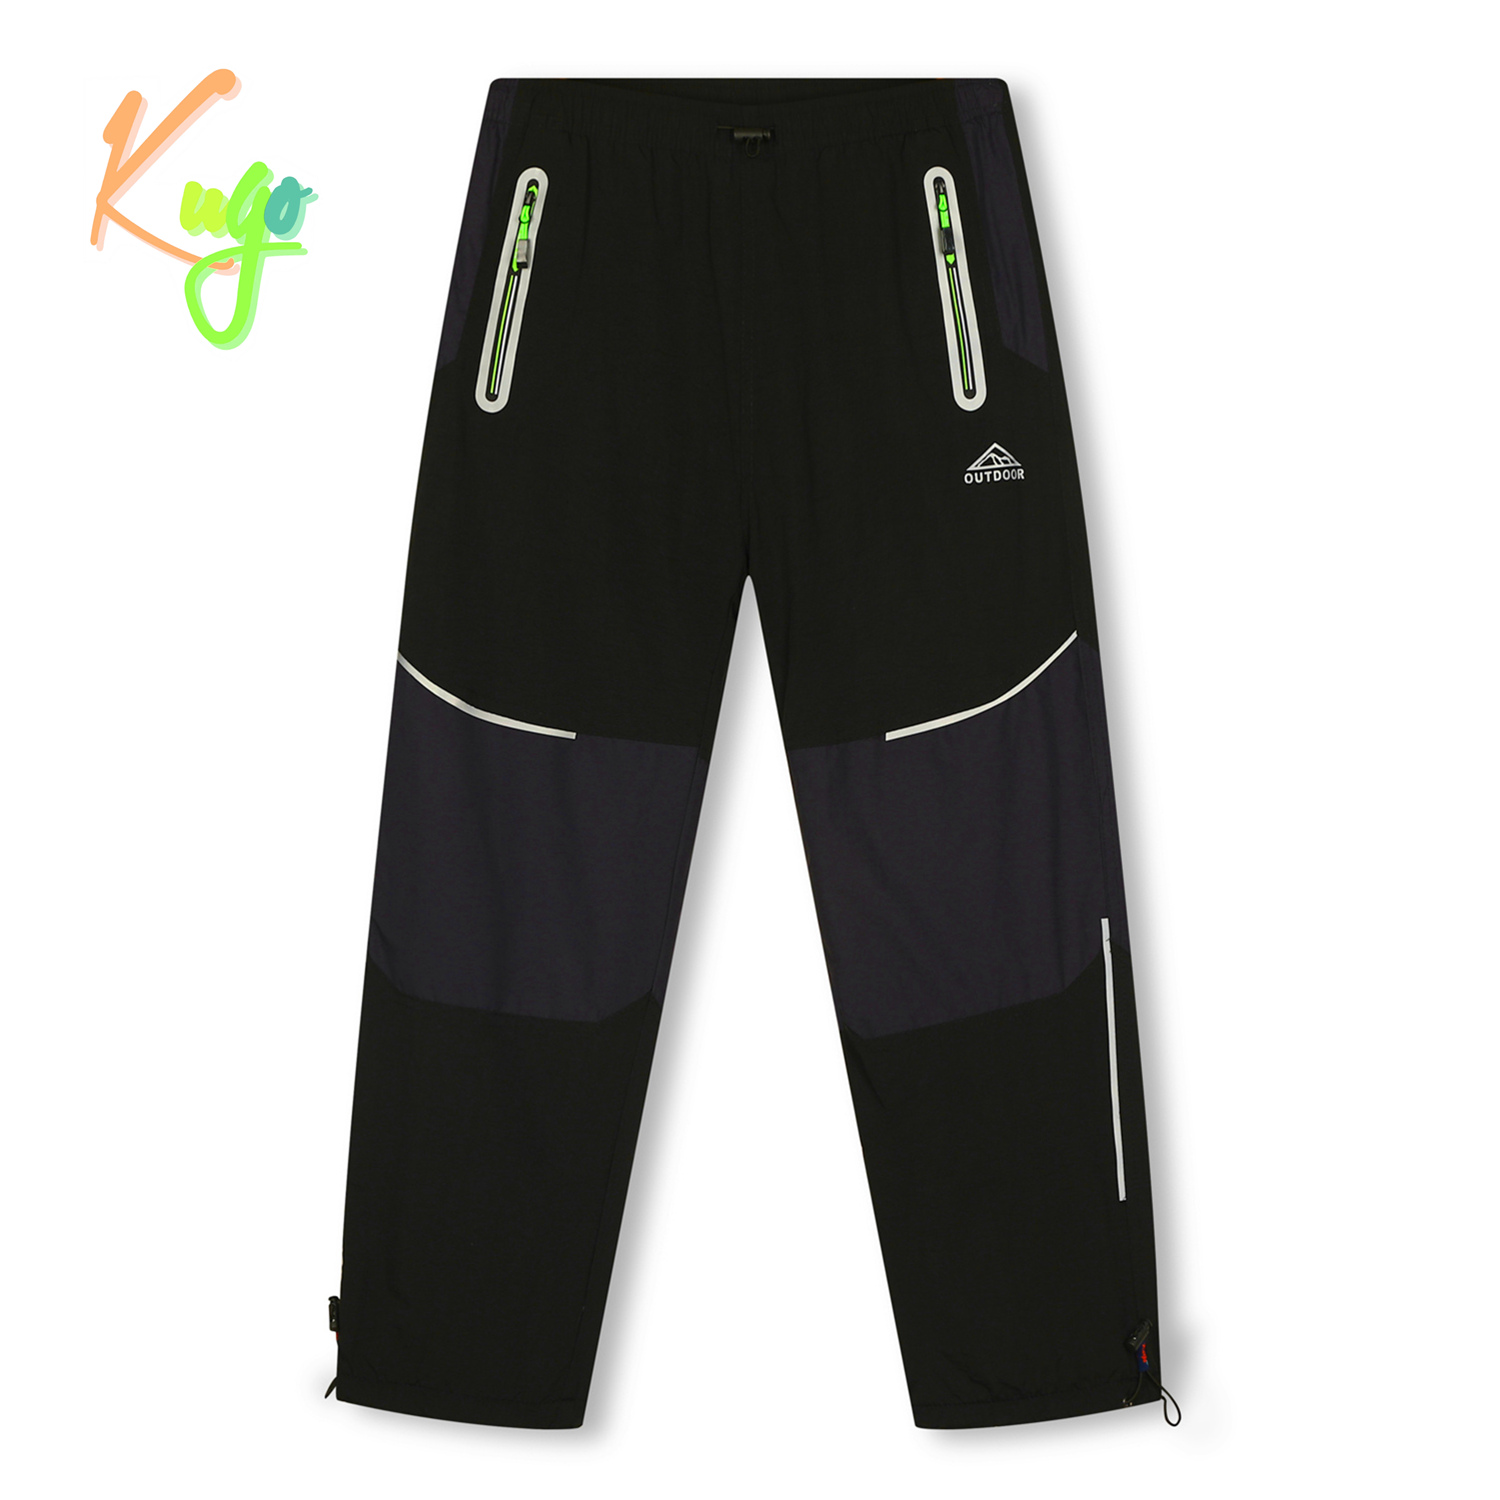 Chlapecké šusťákové kalhoty, zateplené - KUGO DK7137, černá / signální zipy Barva: Černá, Velikost: 158